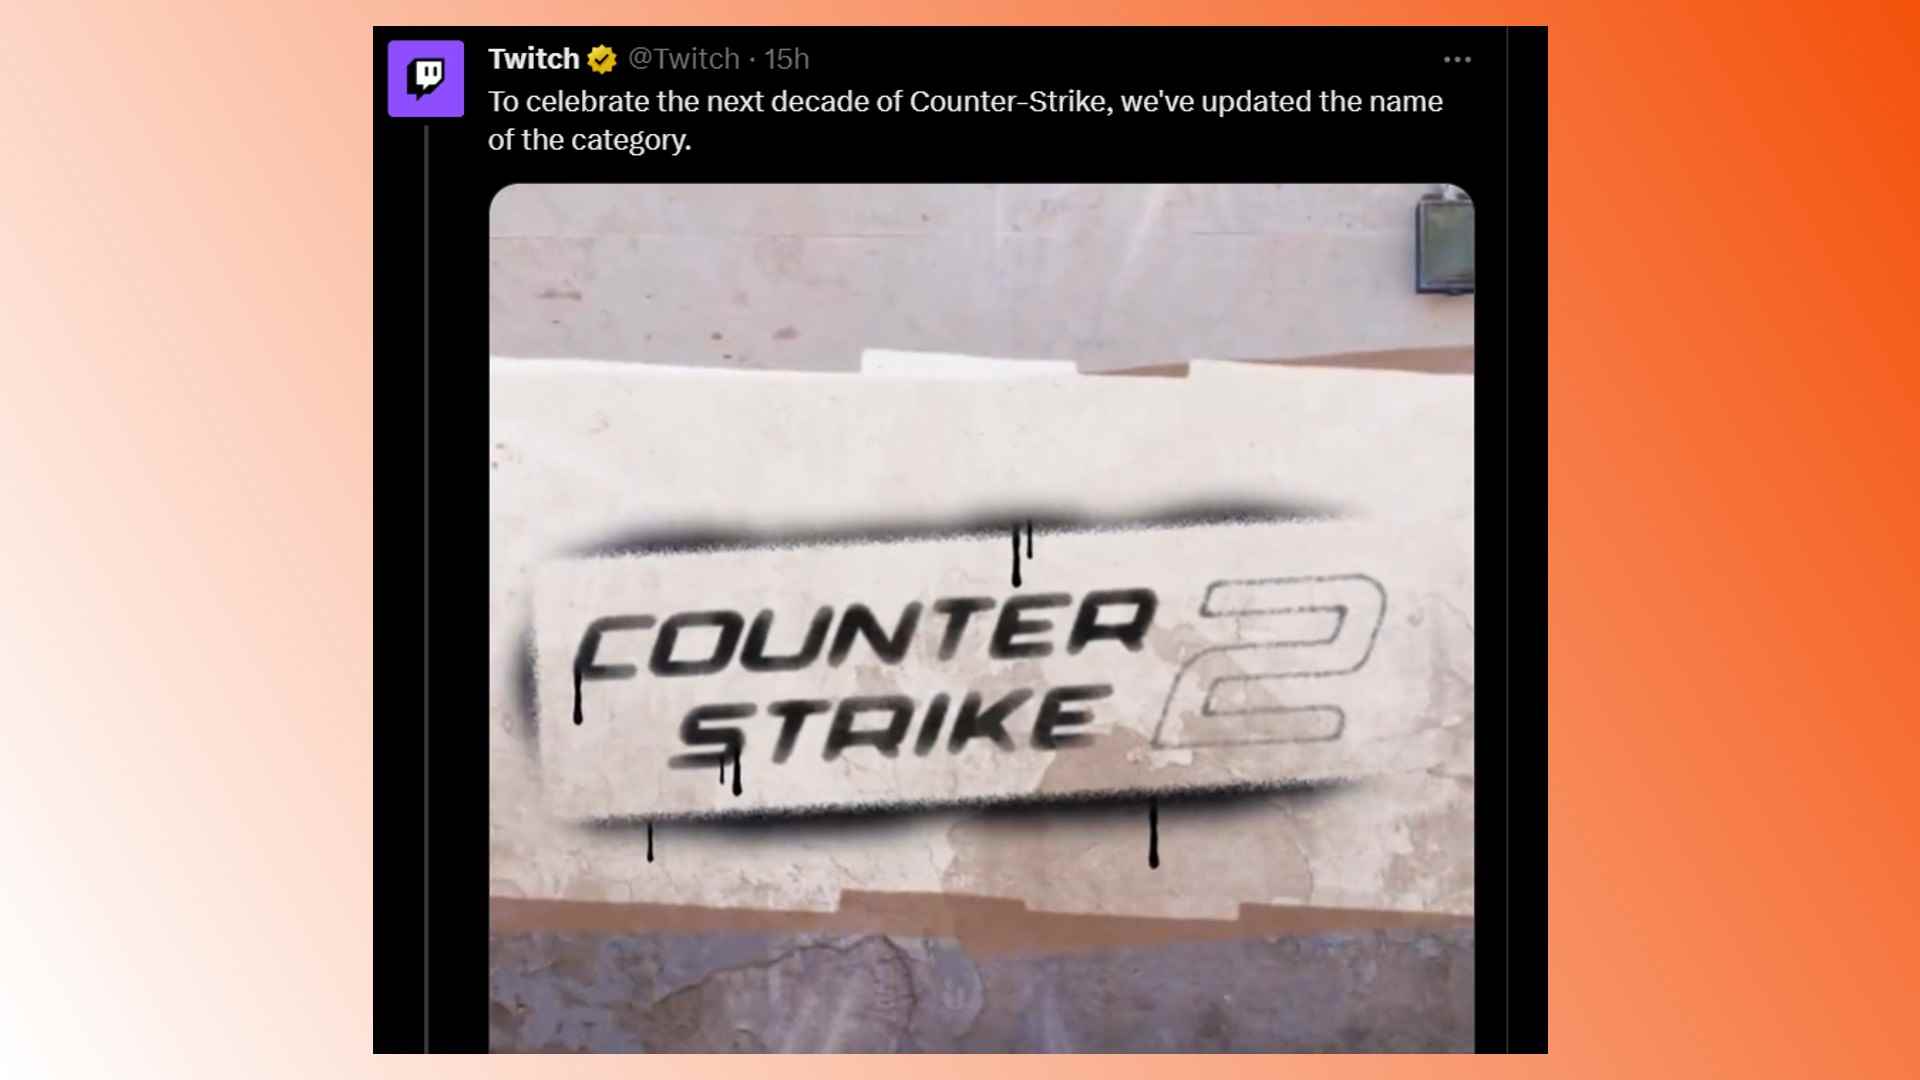 CSGO Twitch kaldırıldı: Twitch'ten Counter-Strike 2 ve CSGO'nun kaldırılmasıyla ilgili bir tweet